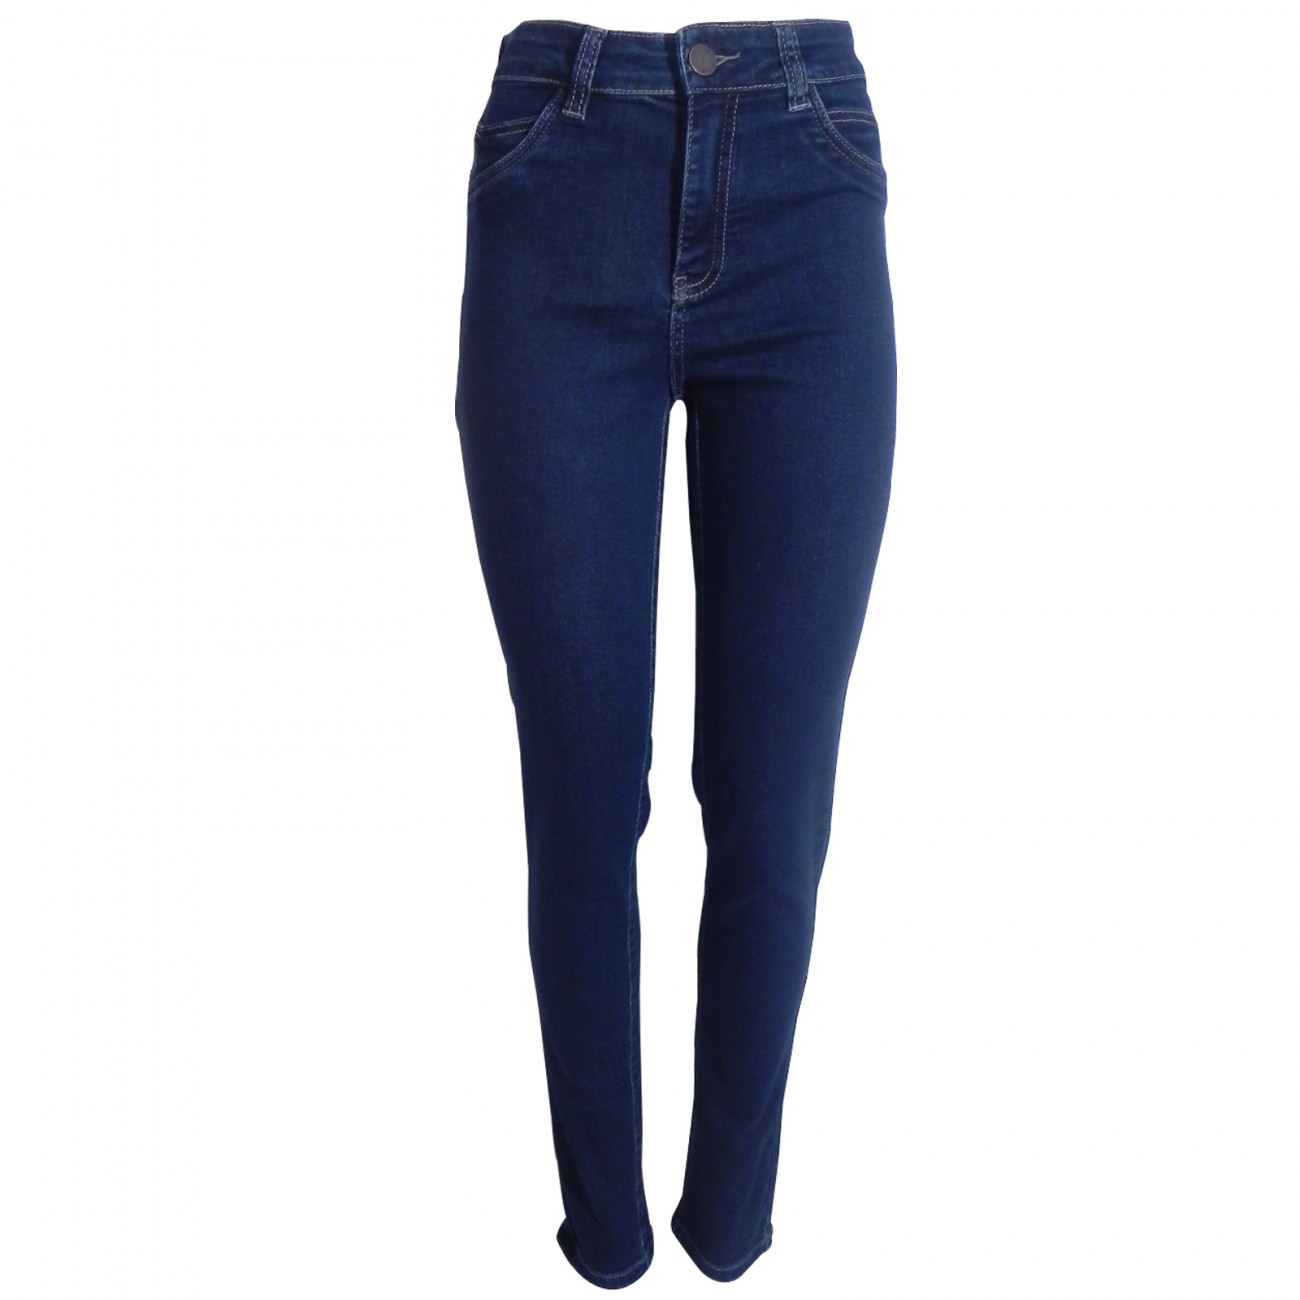 calça jeans feminina scalon